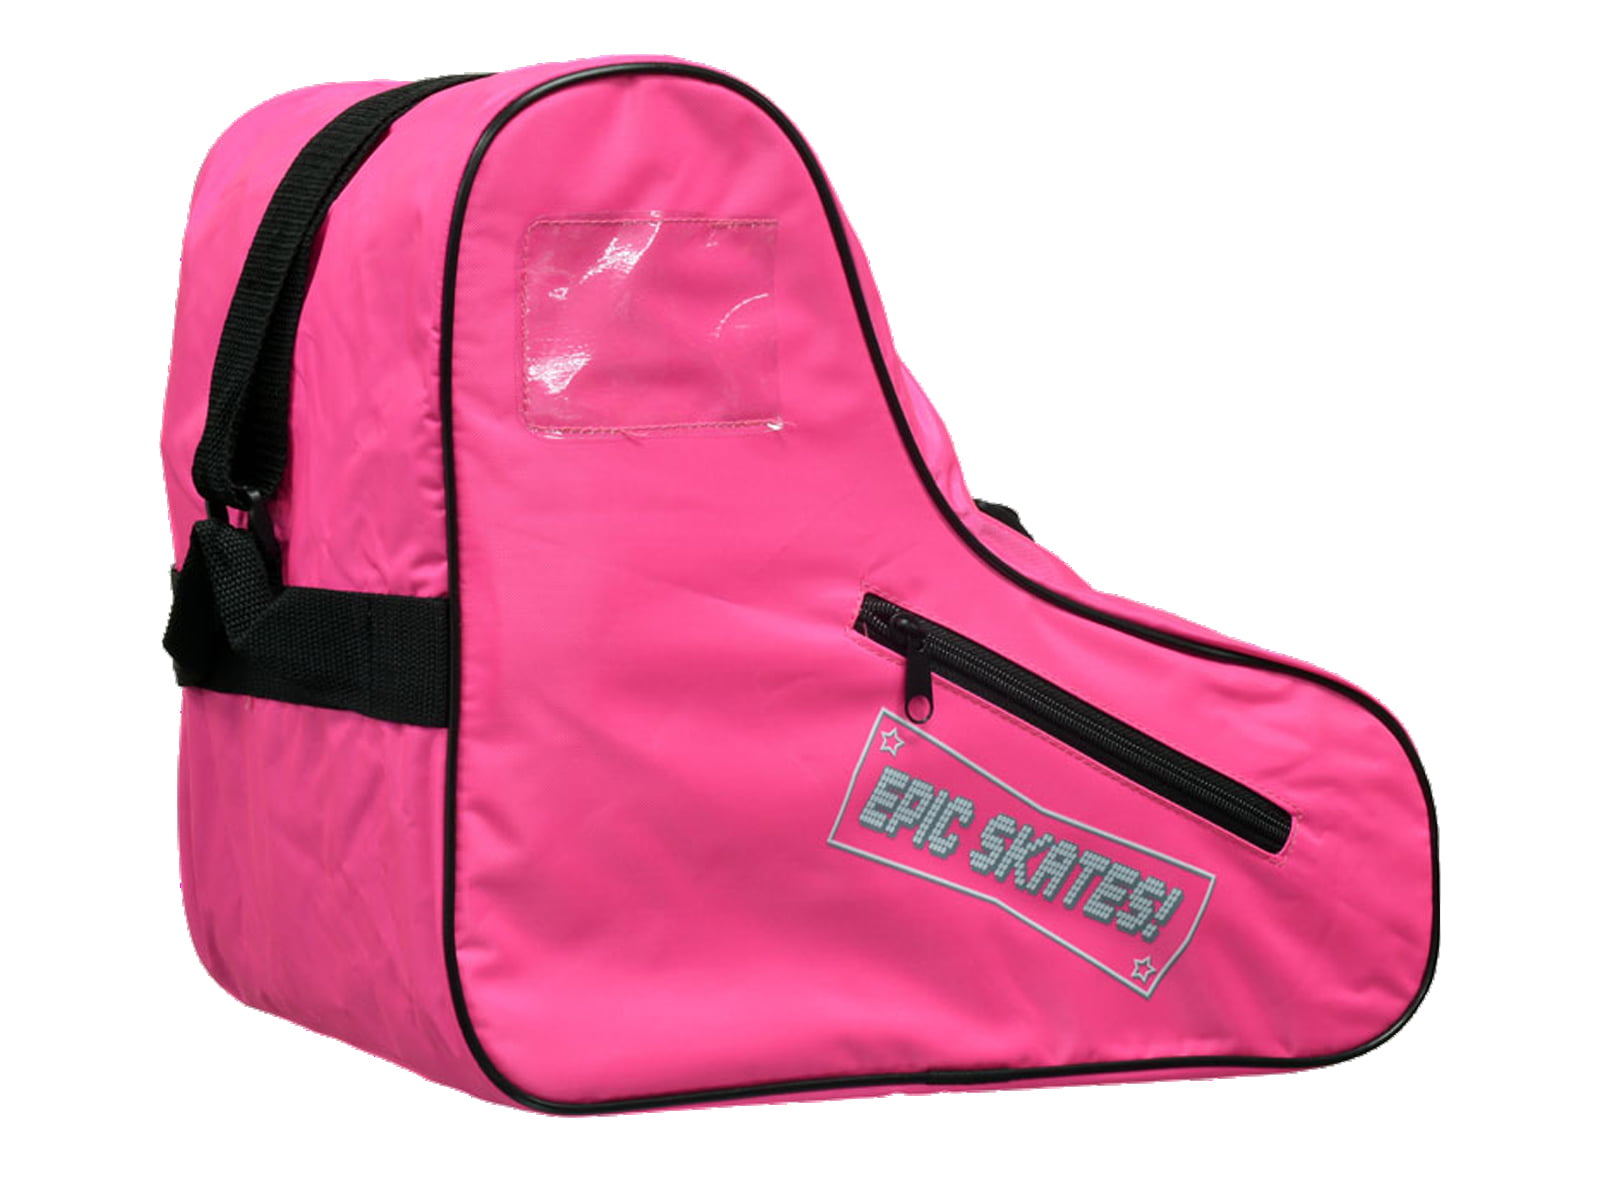 Ice Skate Bag with Adjustable Shoulder Strap for Girls Women Pink TOLUON Roller Skate Bag Roller Skating Bag 